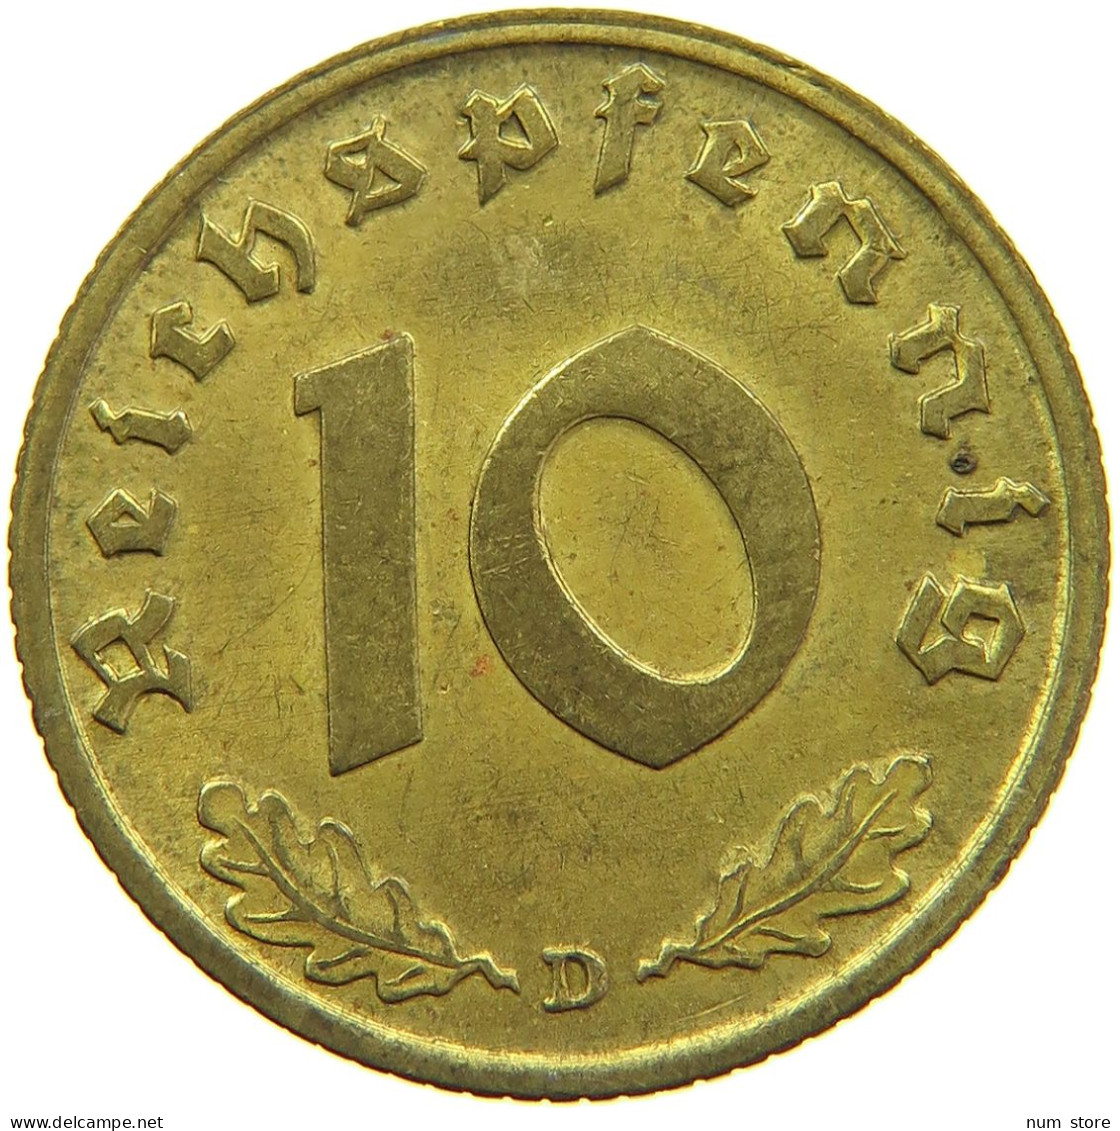 GERMANY 10 REICHSPFENNIG 1937 D #s095 0127 - 10 Reichspfennig